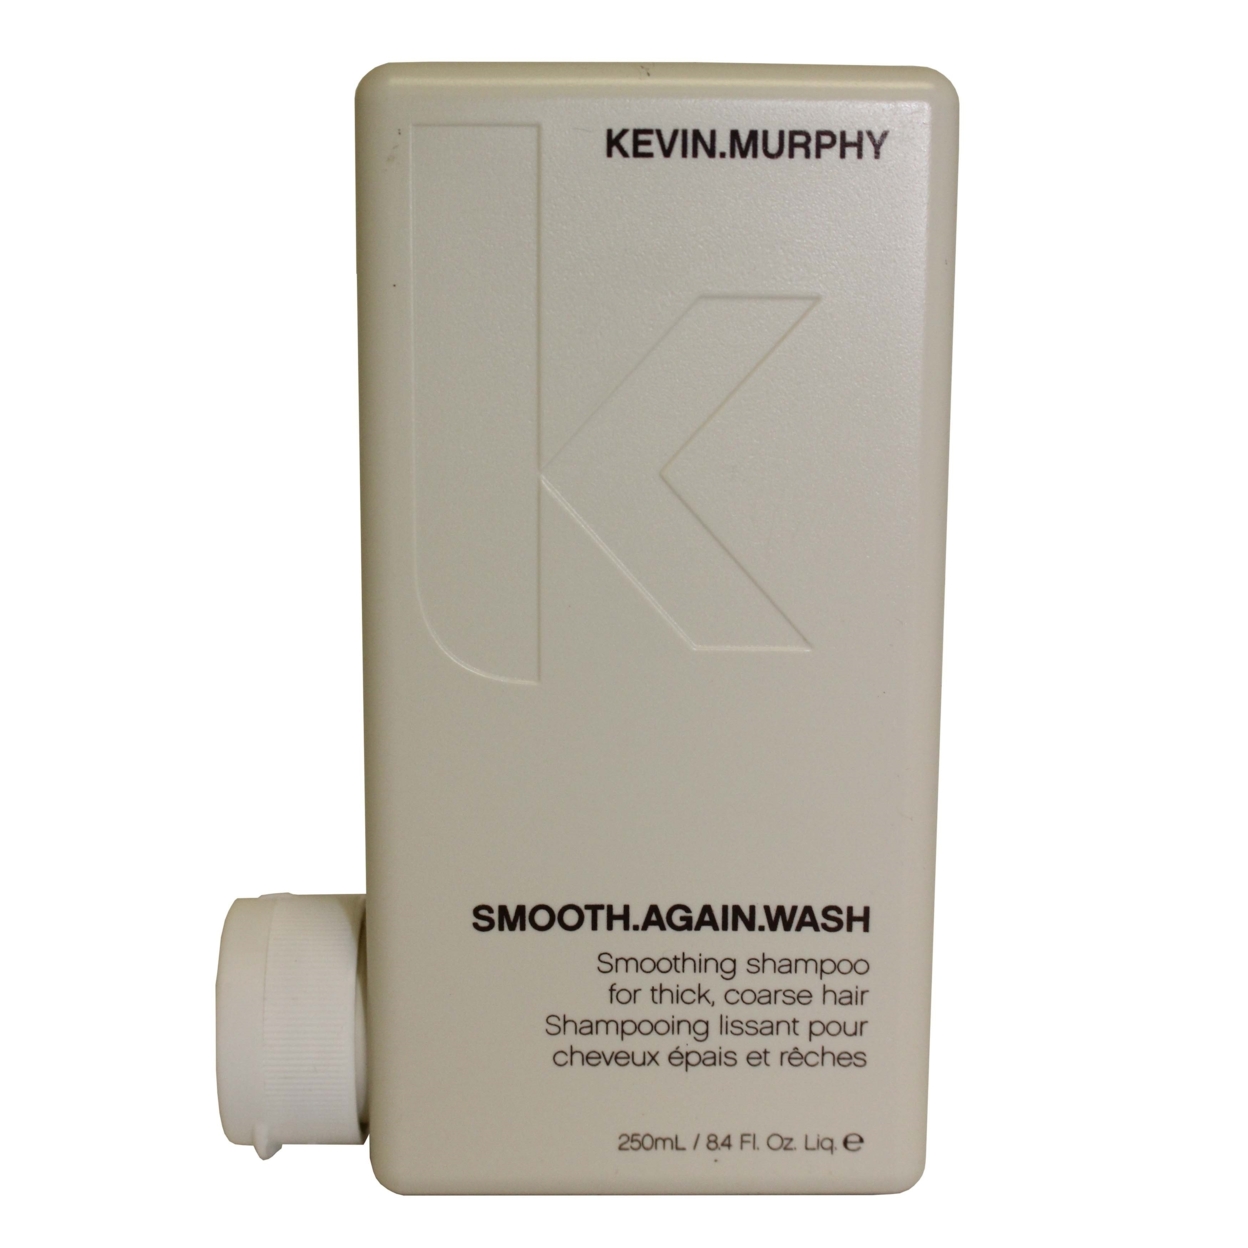 Kevin Murphy Smooth Again Wash 250ml/8.4oz